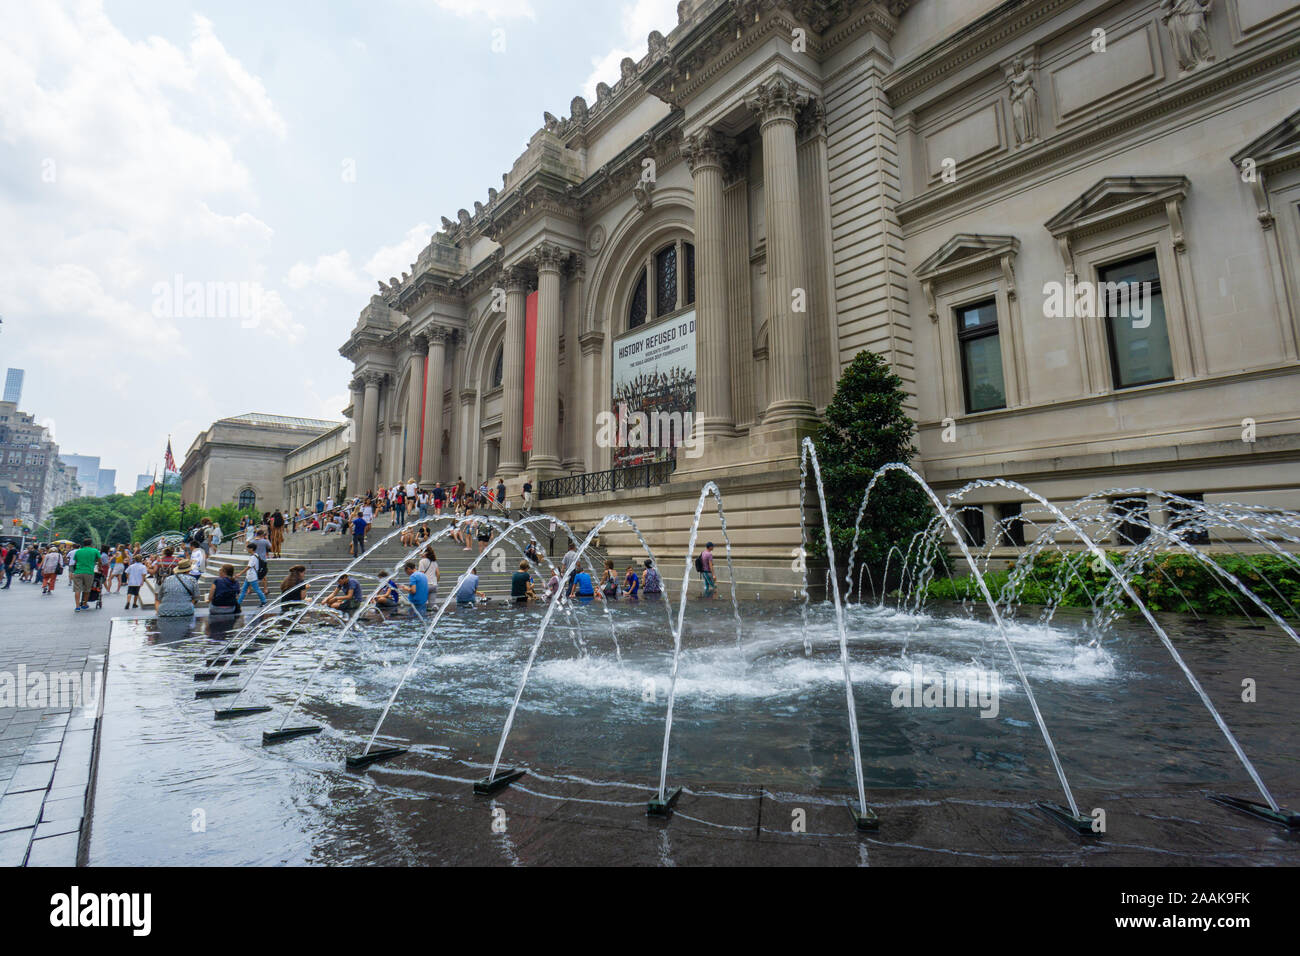 New York, USA - 20 août 2018 : Le Metropolitan Museum of Art situé dans la ville de New York. Banque D'Images